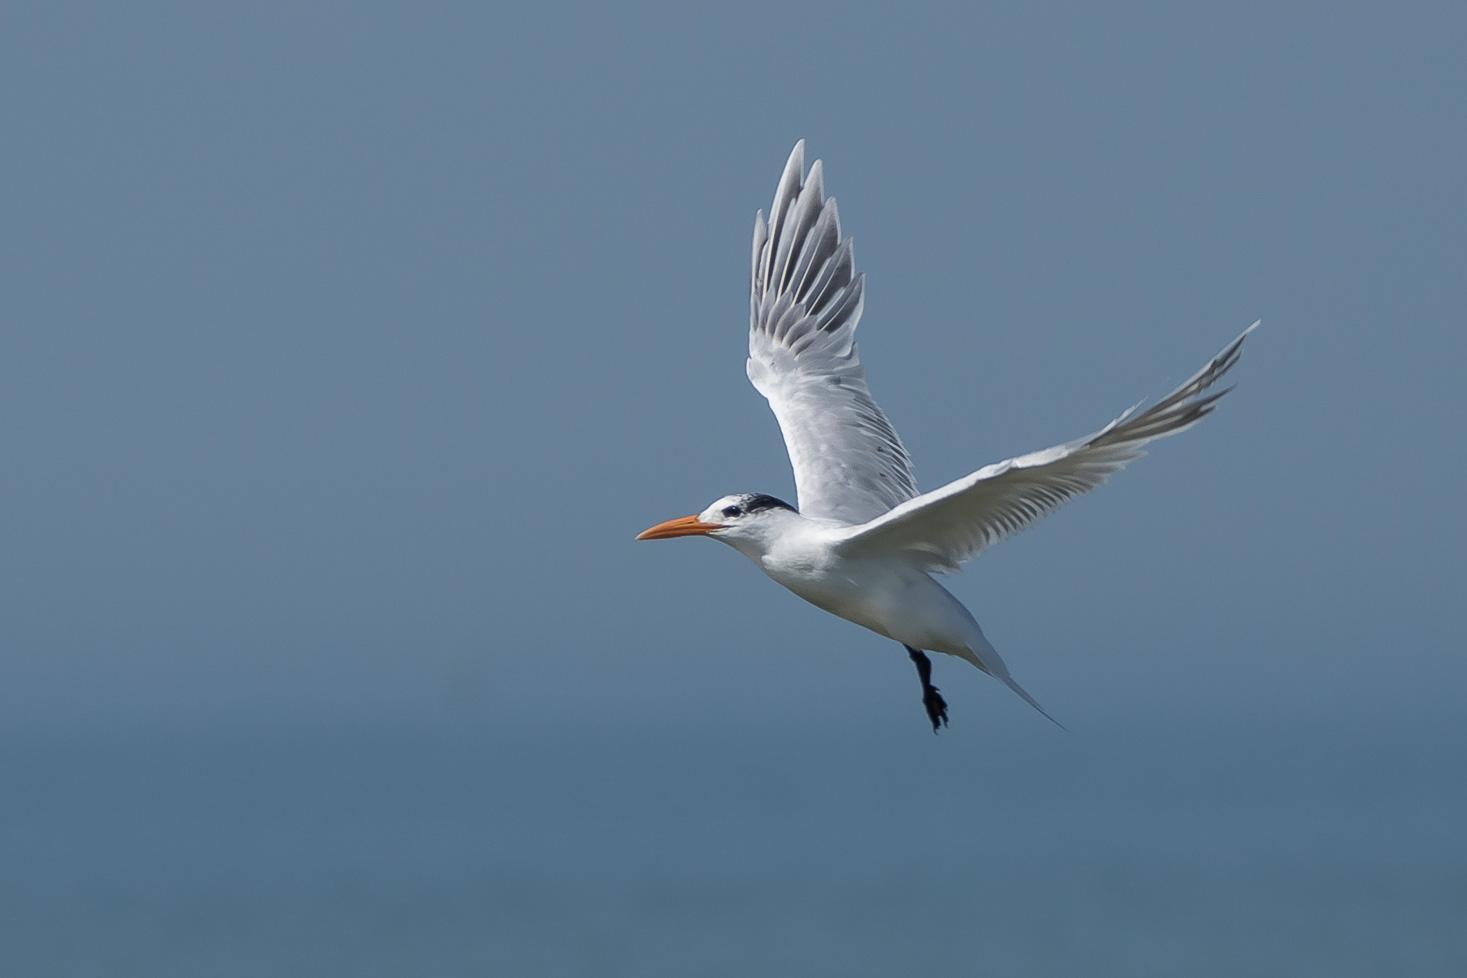 Royal Tern Photo by Gerald Hoekstra